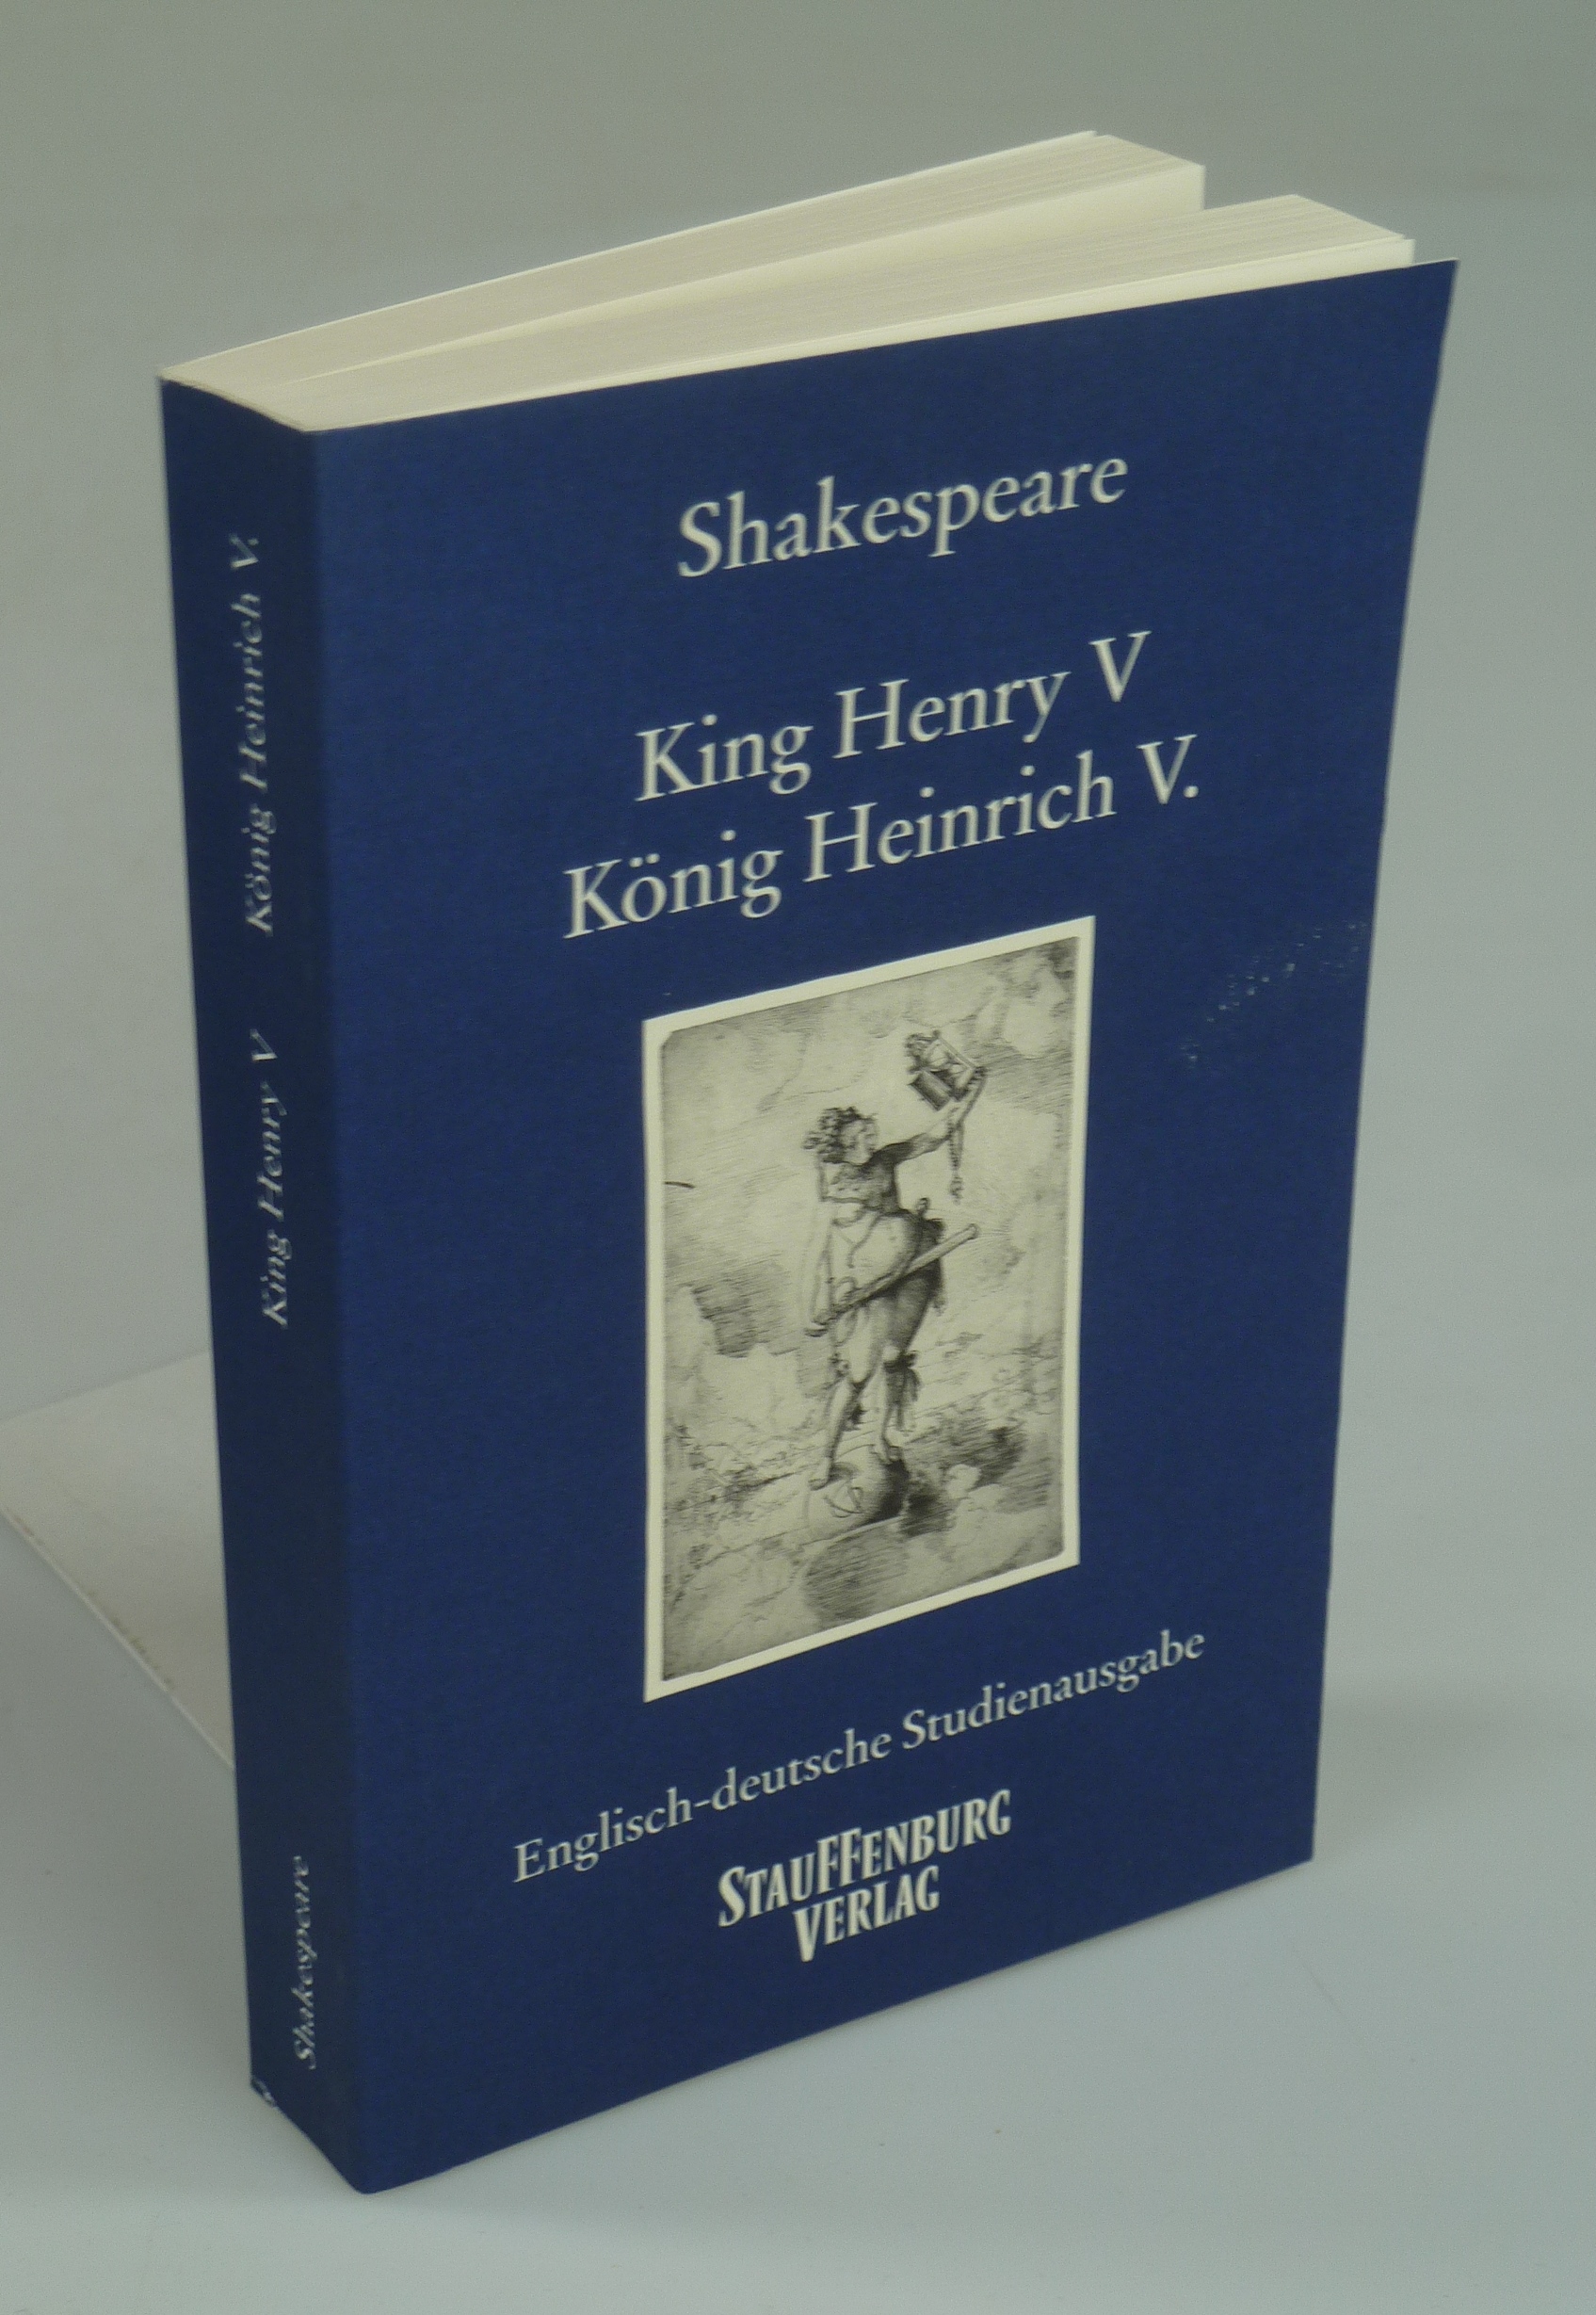 King Henry V - König Heinrich V. - SHAKESPEARE, William.